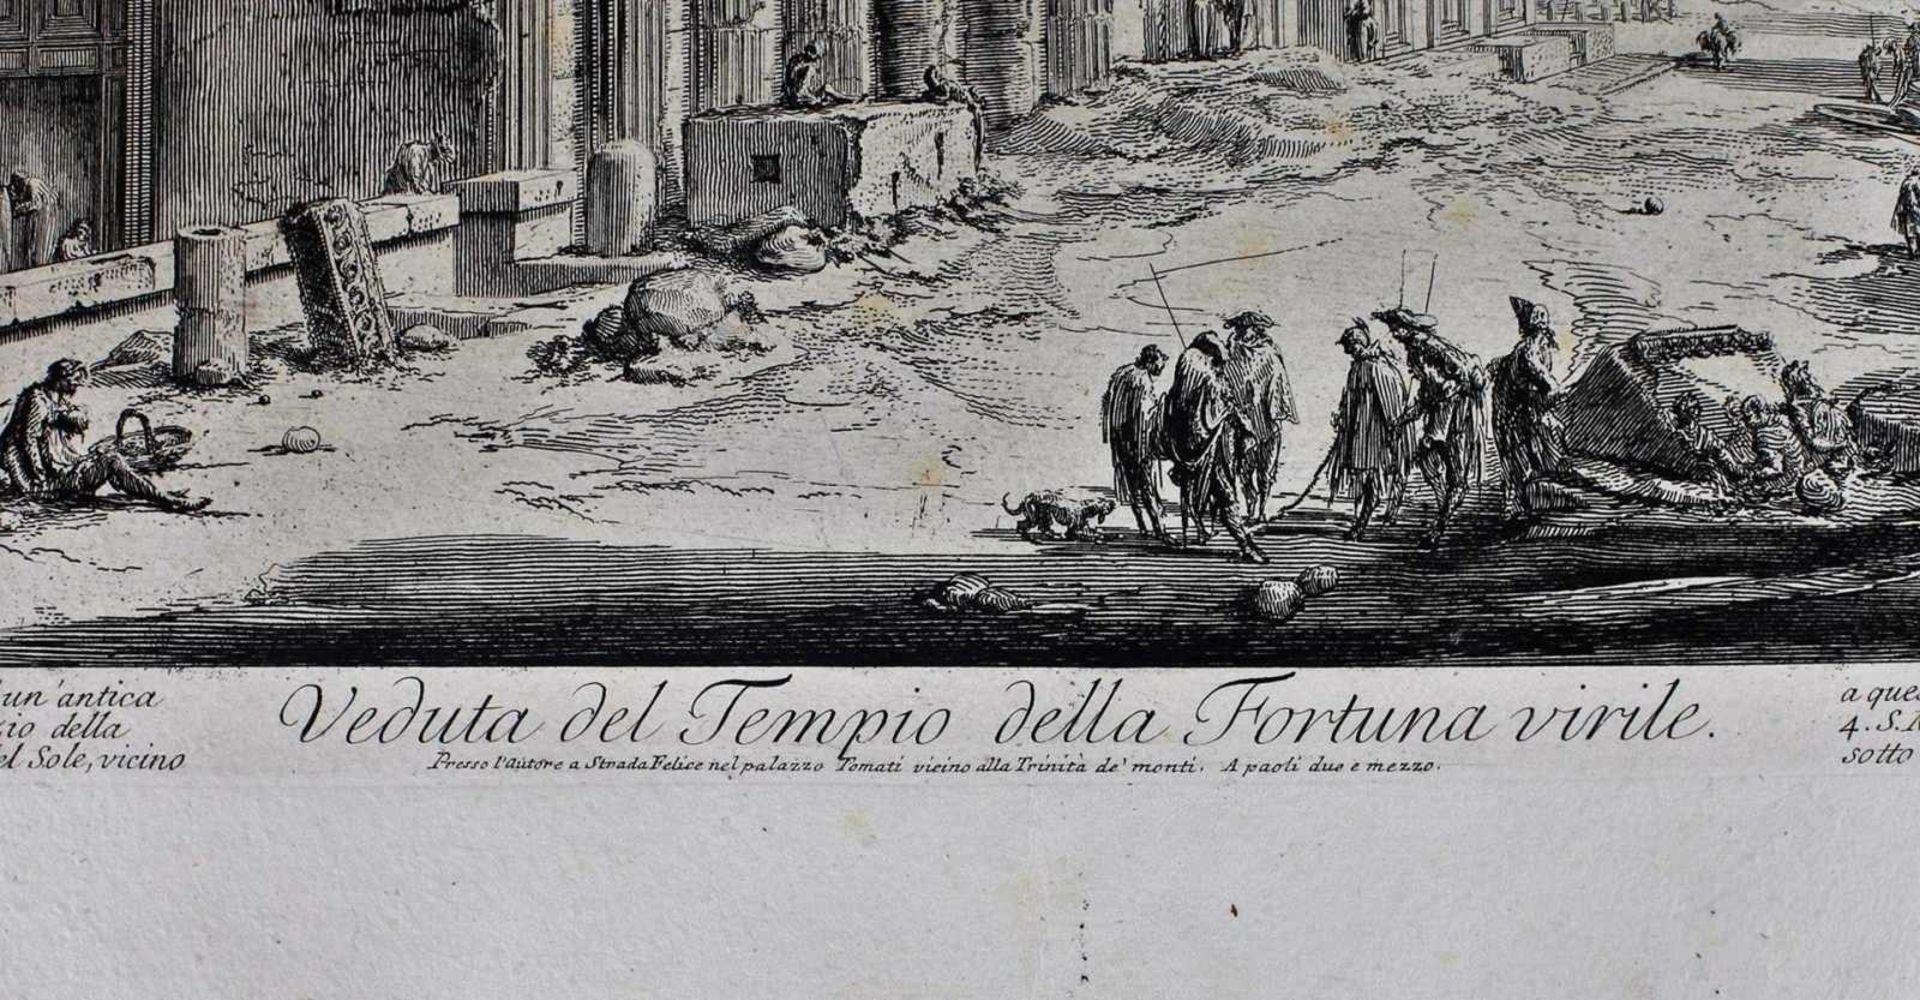 Piranesi, G.B. Teatro di Marcello und Veduta del Tempio della Fortuna virile, Roma. Mid XVIII - Image 2 of 2